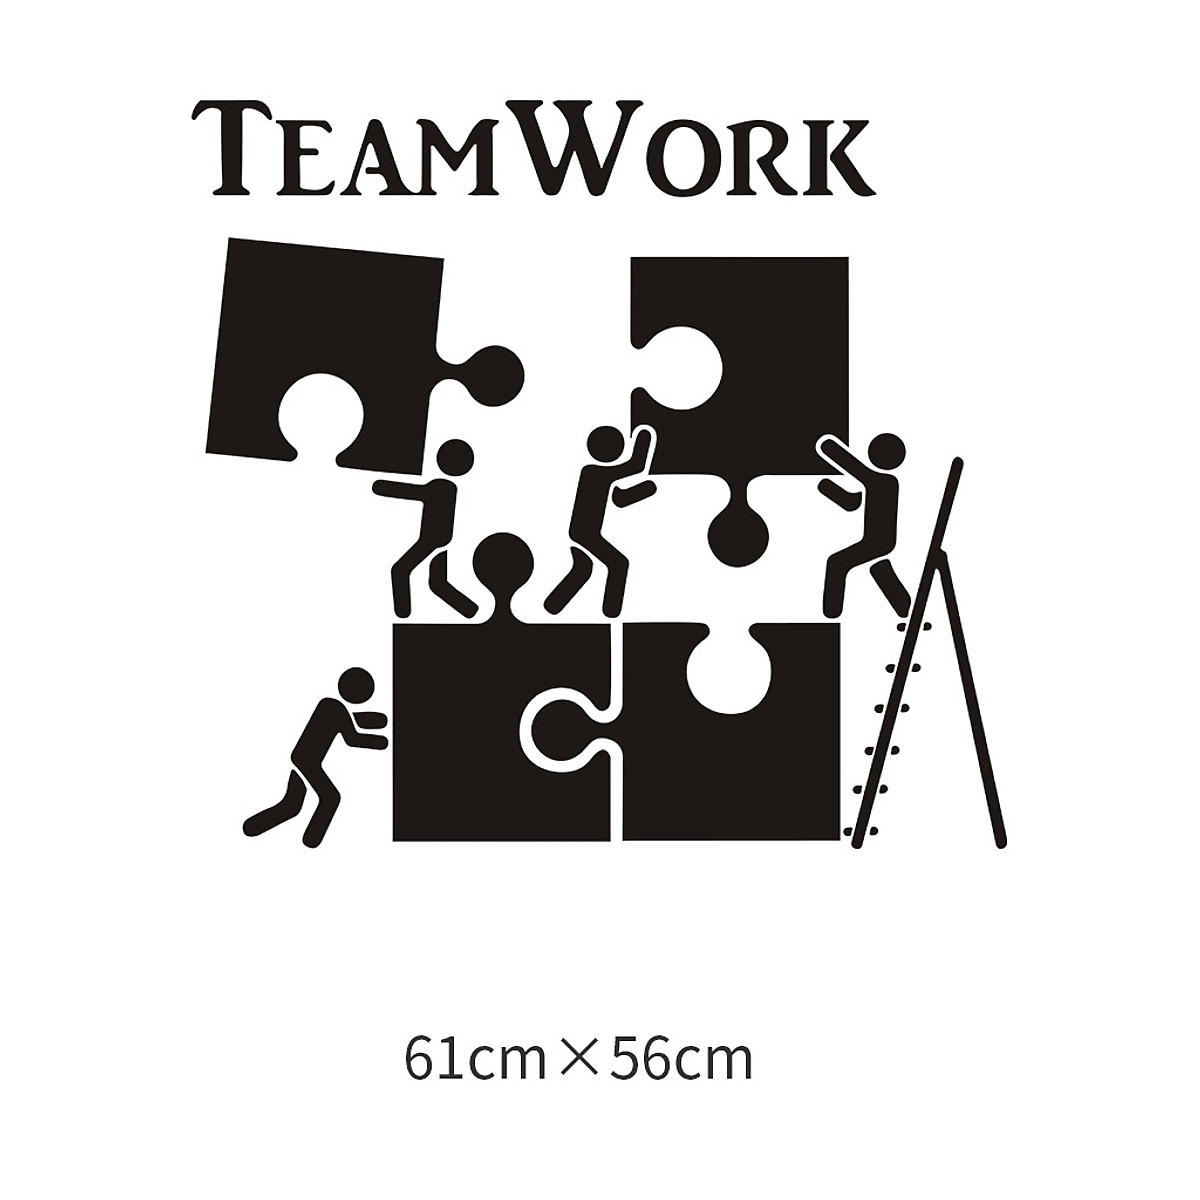 Chi tiết với hơn 53 về hình ảnh teamwork hay nhất - Du học Akina